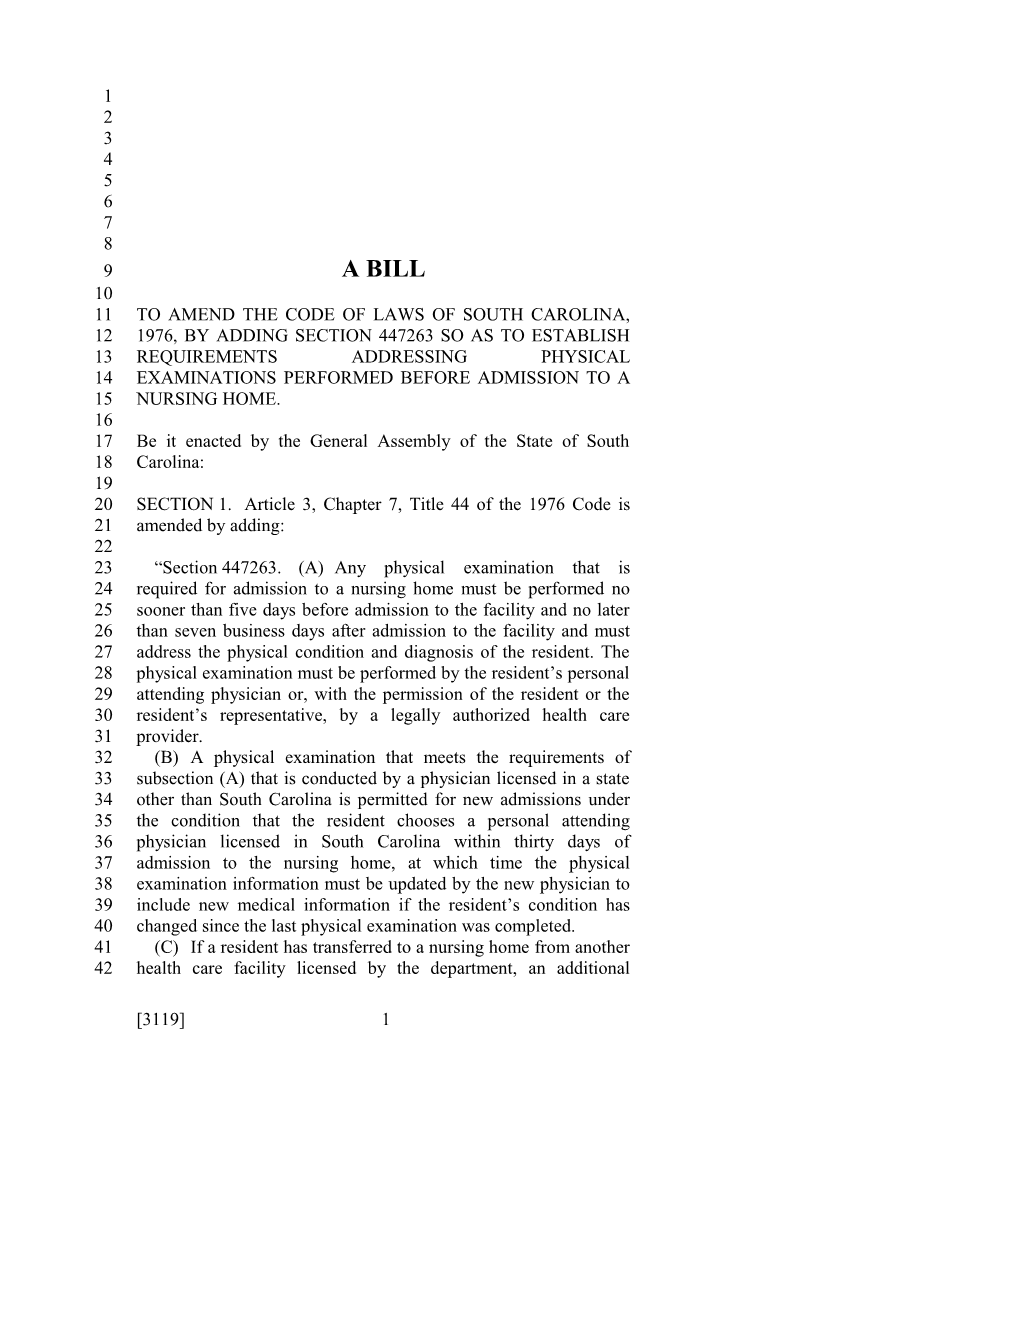 2017-2018 Bill 3119 Text of Previous Version (Dec. 15, 2016) - South Carolina Legislature Online